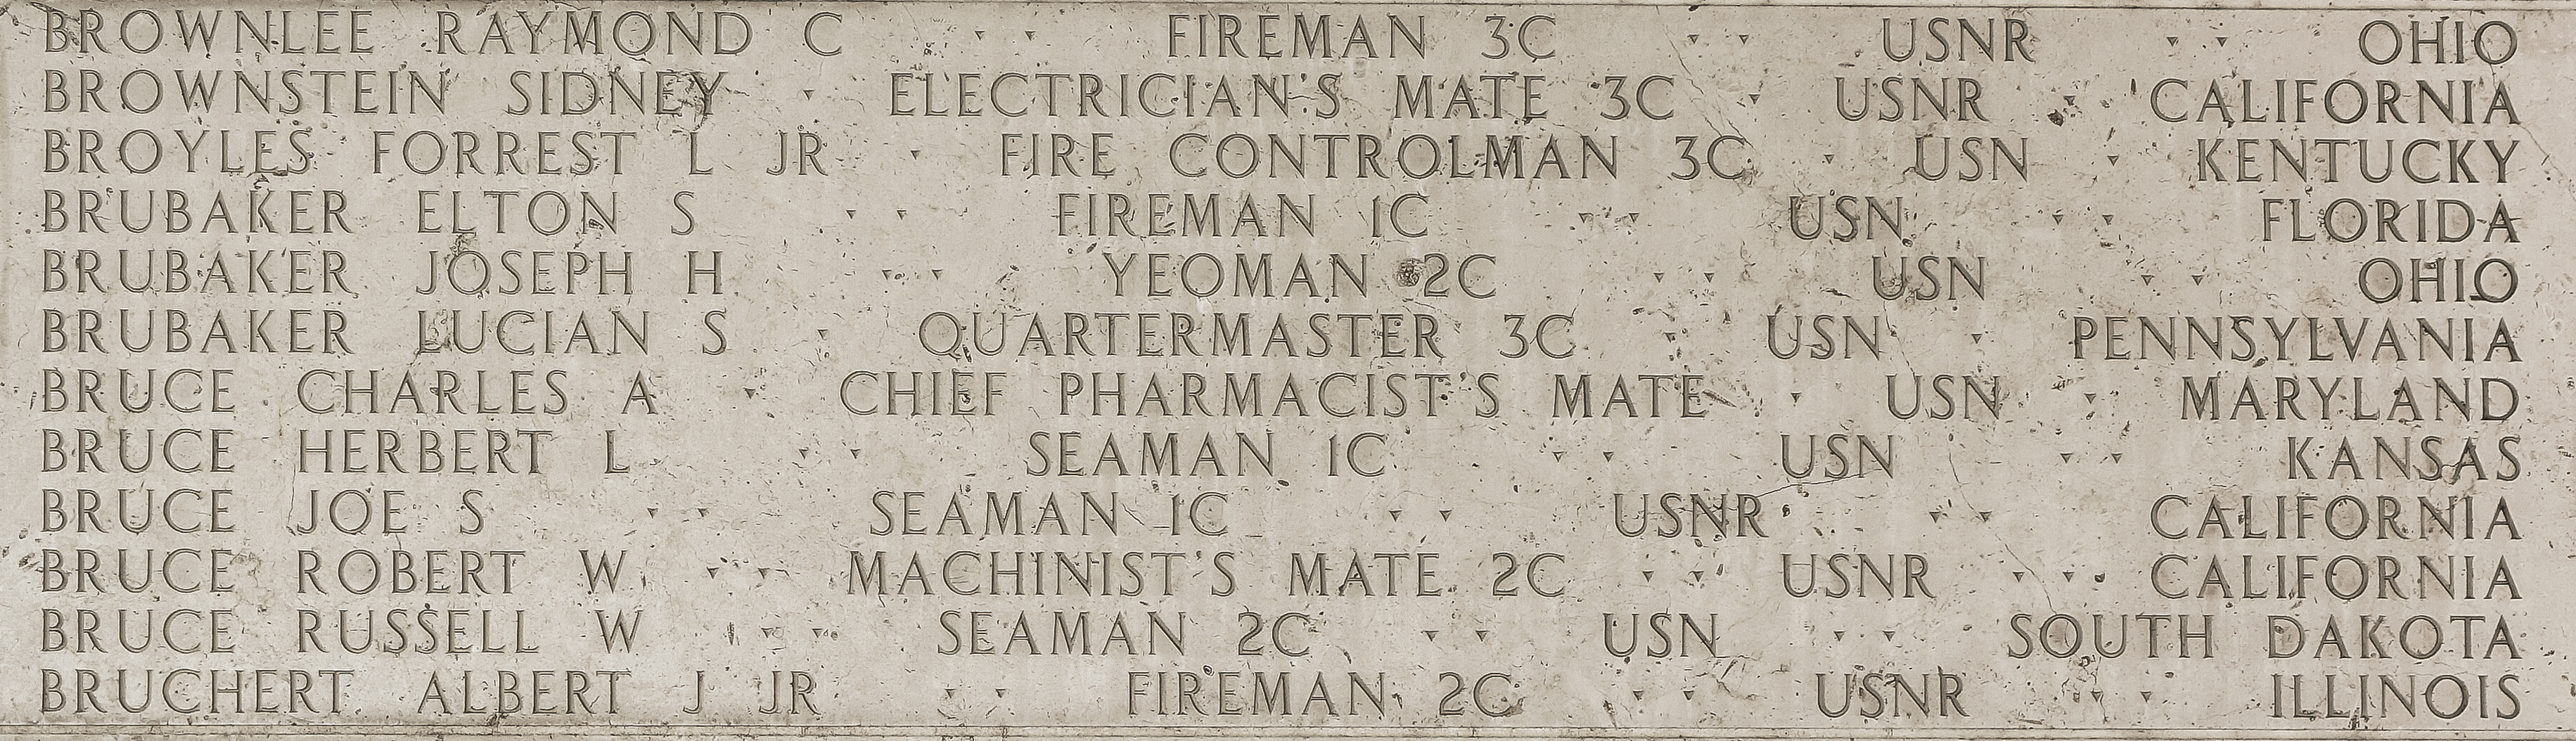 Albert J. Bruchert, Fireman Second Class